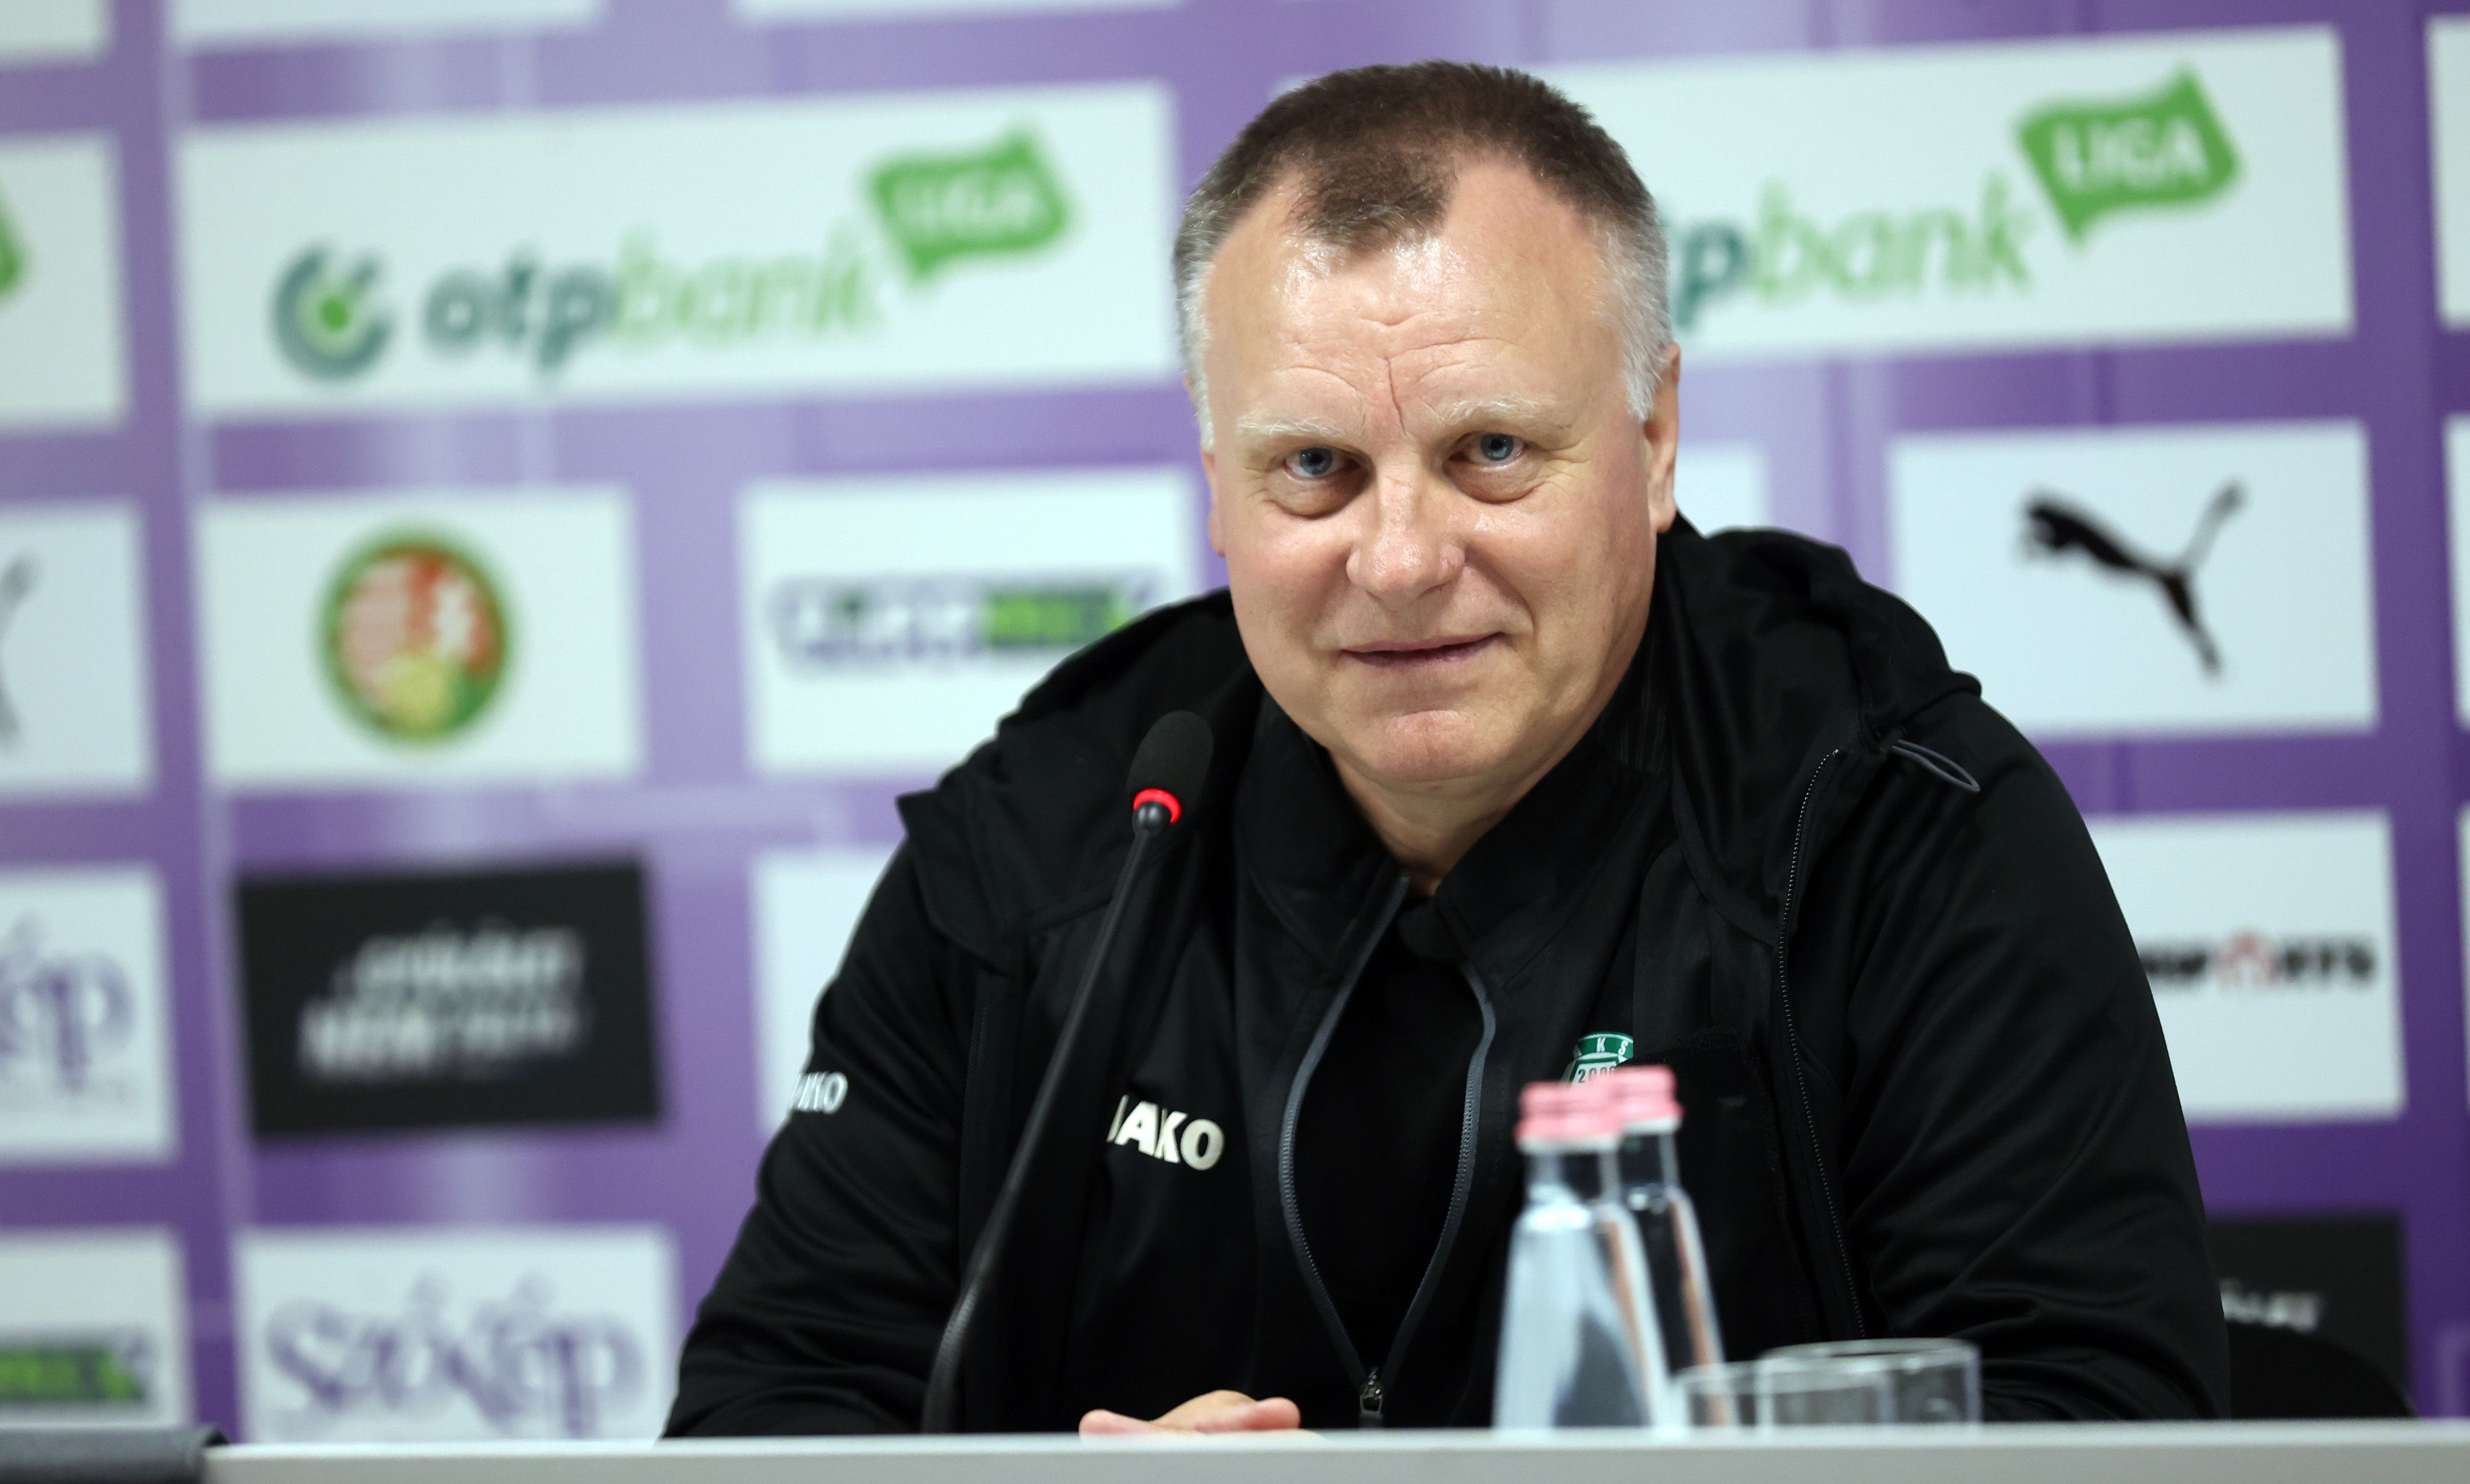 A Paksot irányító Bognár György szerint fordulatos meccset játszottak az Újpest ellen, és a döntetlen talán igazságosabb lett volna. Fotó: Zsolnai Péter